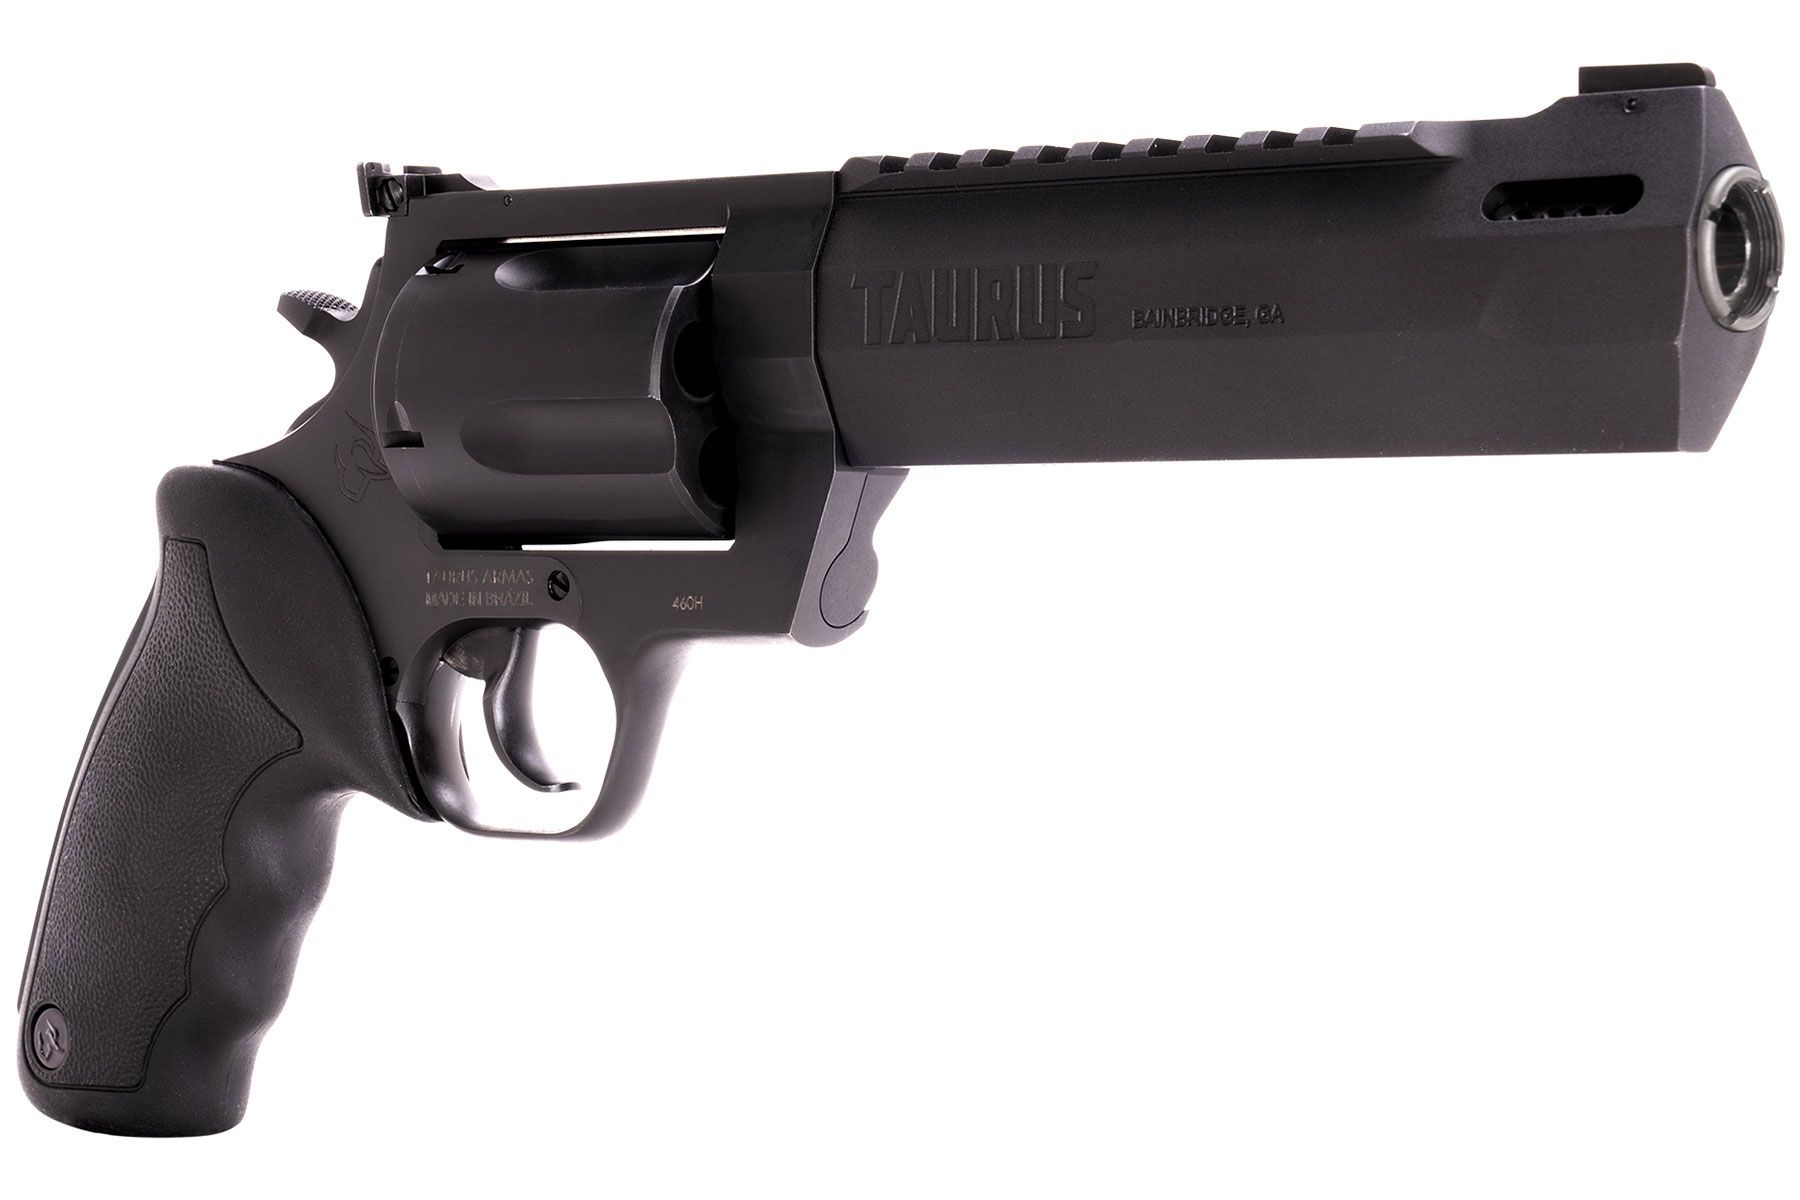 Taurus Raging Hunter 460 S&W Magnum Black 6.75 in.